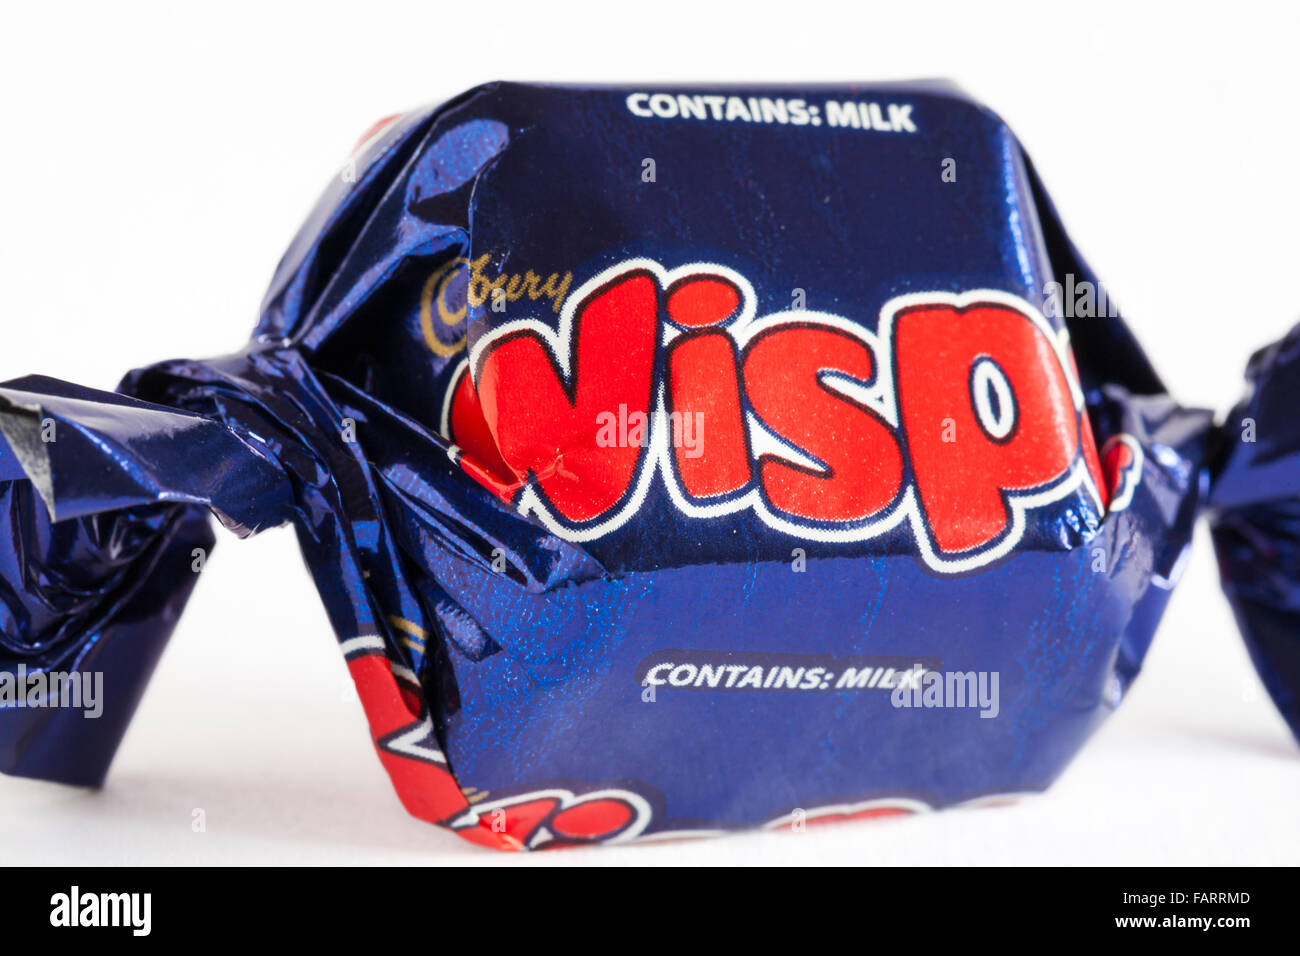 Le chocolat de Wispa Cadbury sachet de jeu héros sur fond blanc Banque D'Images